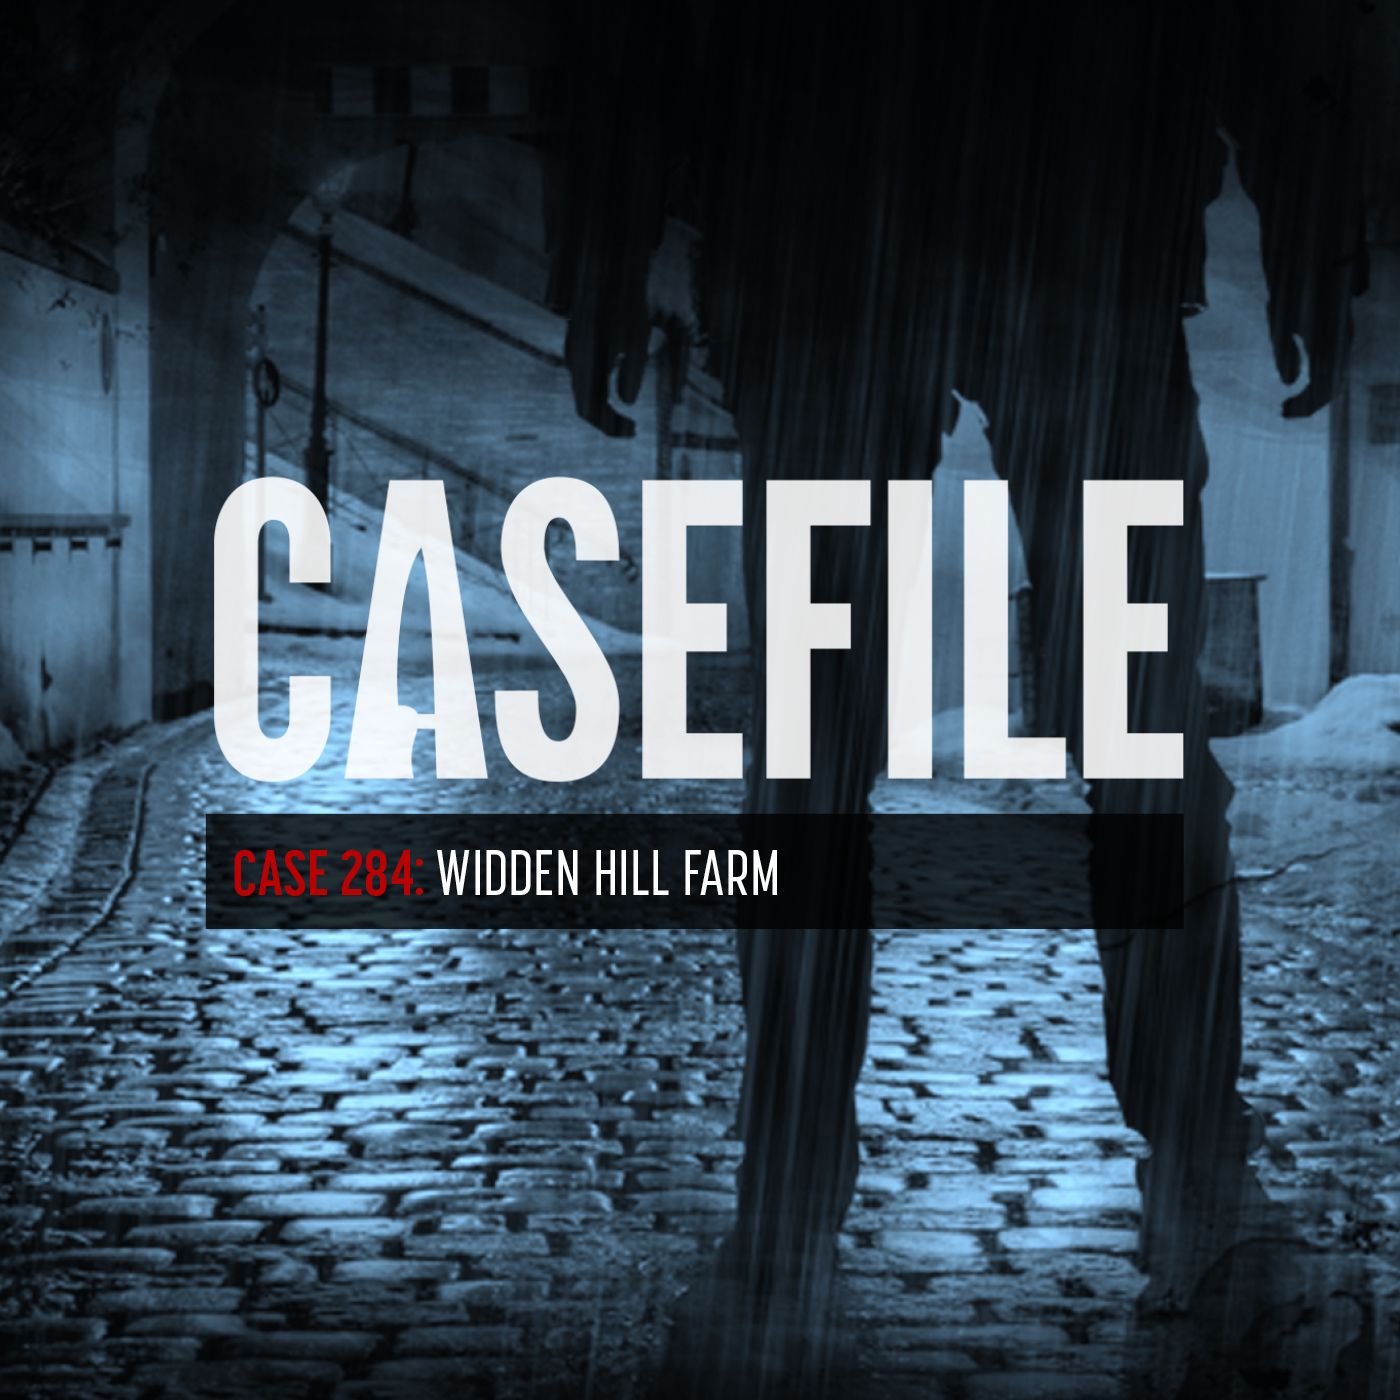 331: Case 284: Widden Hill Farm